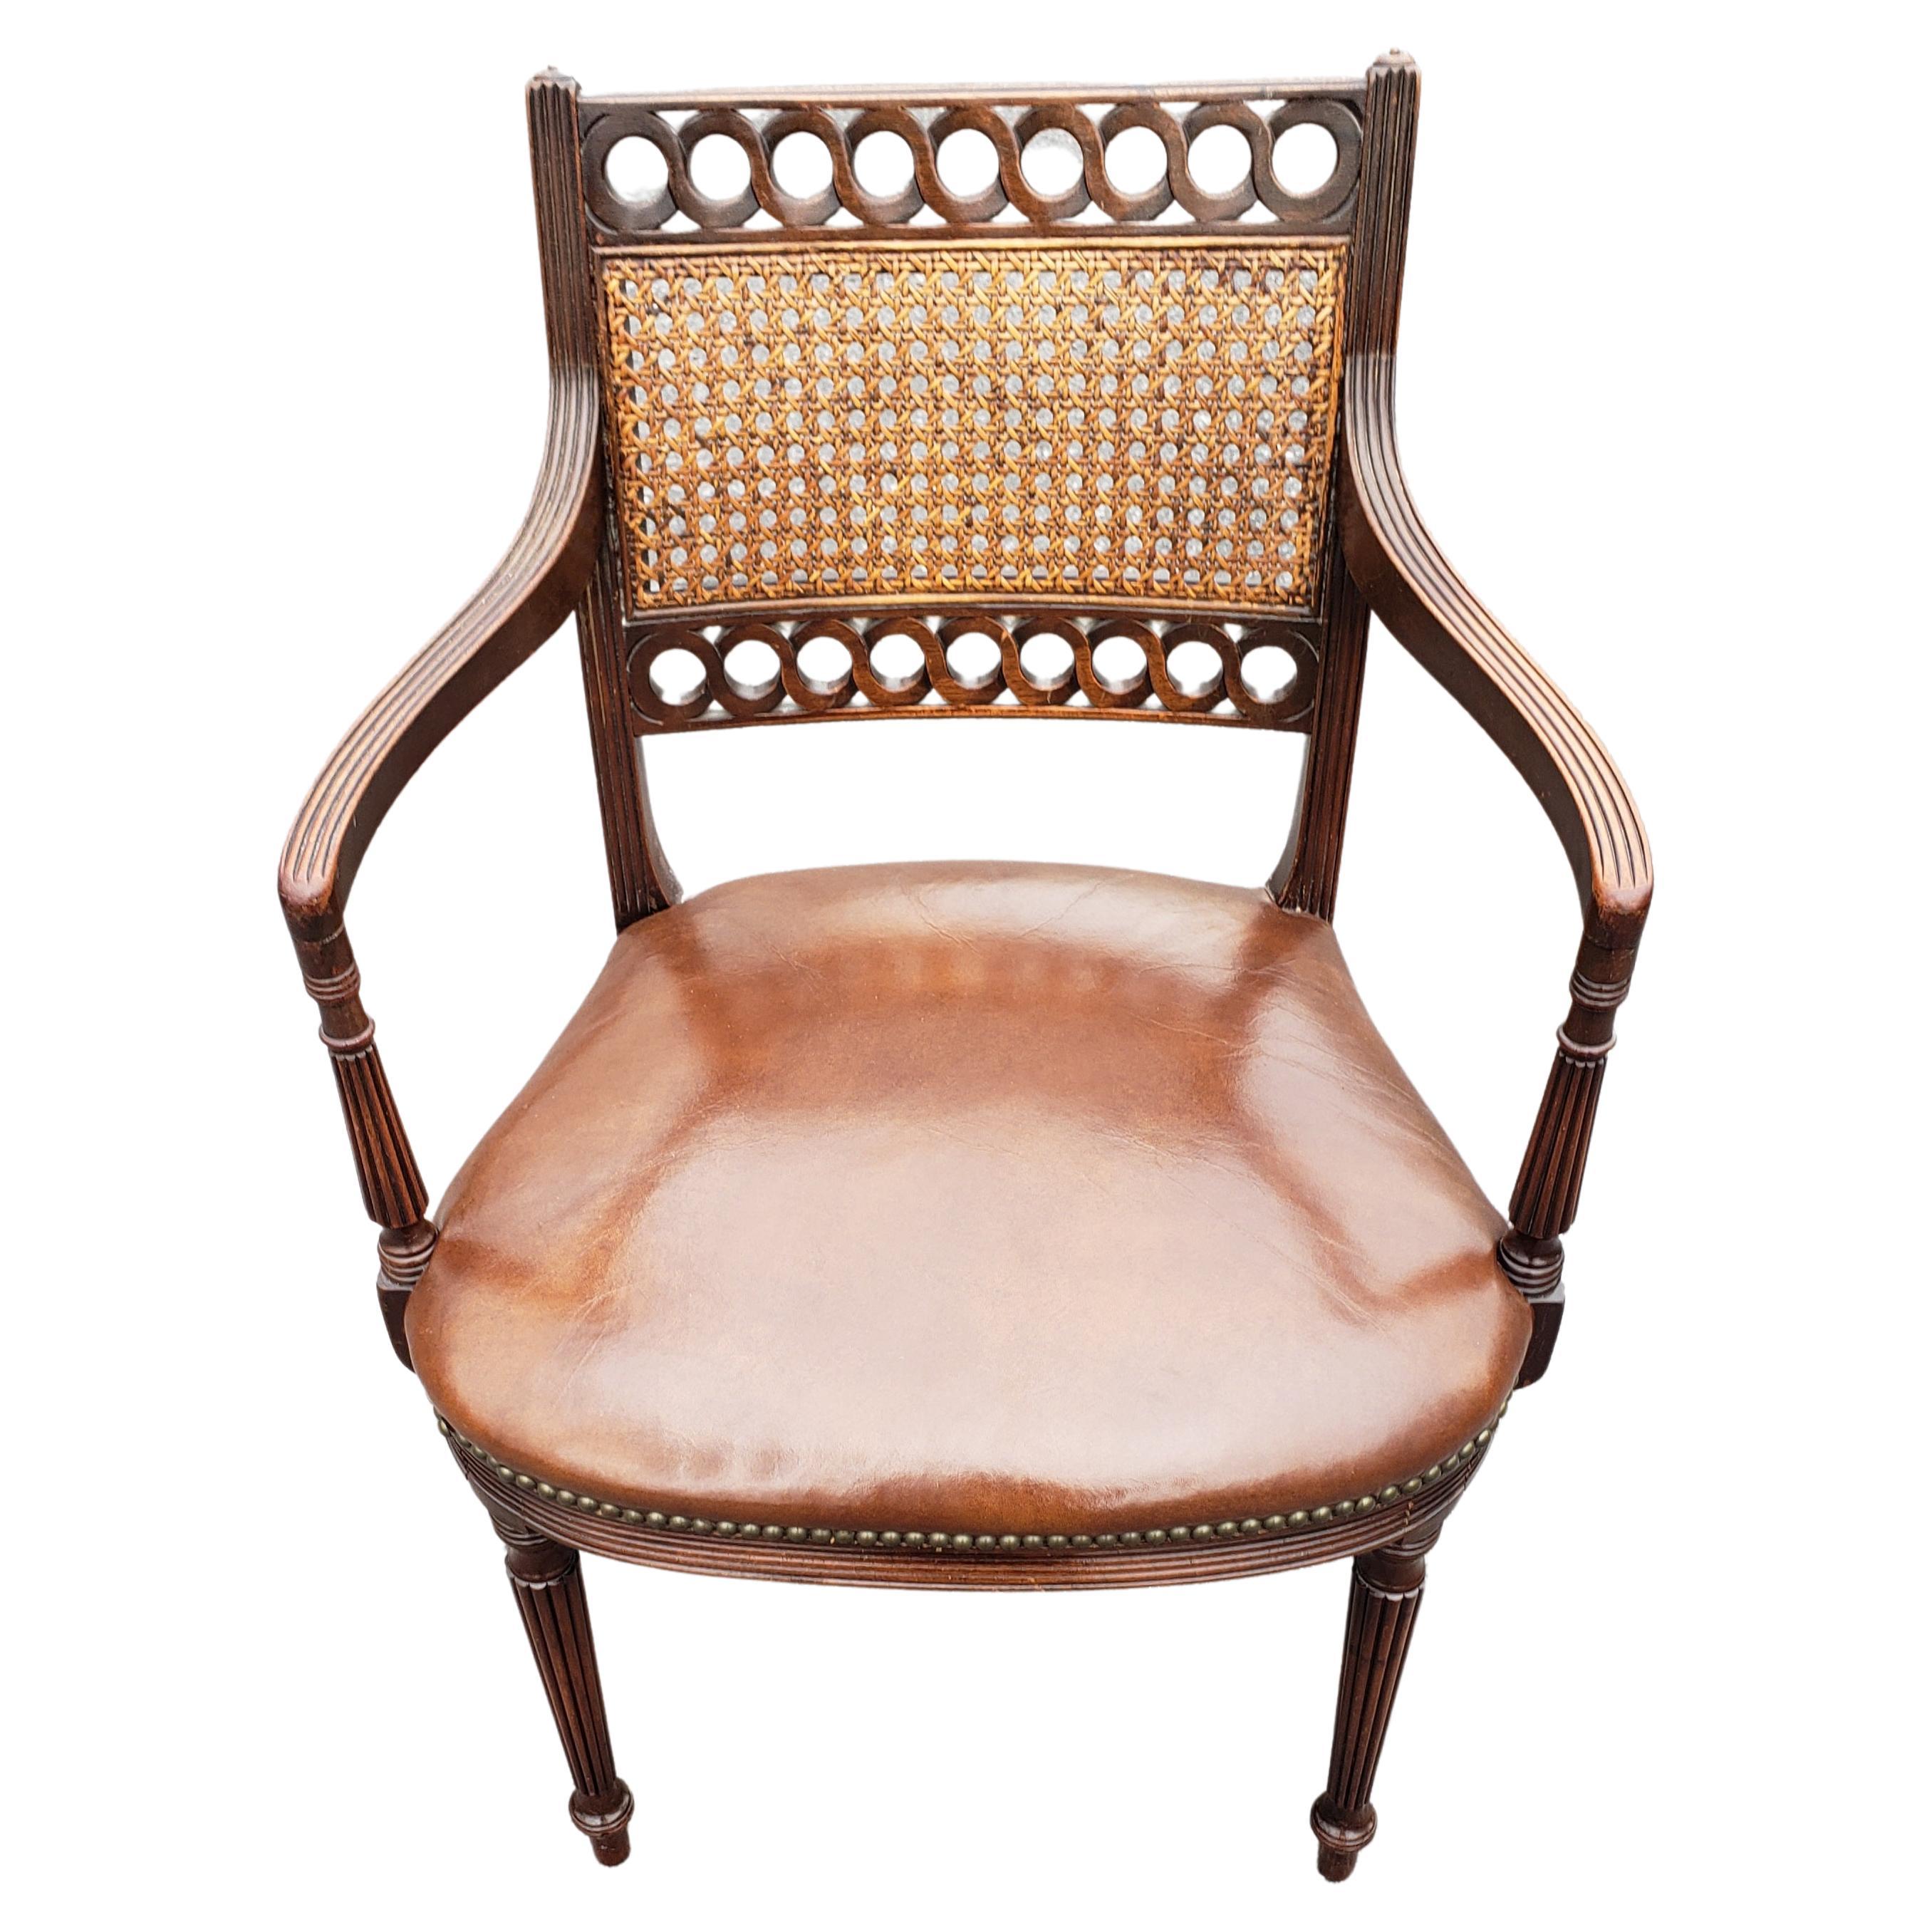 Mid-Century Regency Mahagoni Leder Sitz mit Cane Back Sessel in gutem Zustand. Sehr bequem. Der Sitz ist sehr fest und wurde im Laufe der Zeit neu gepolstert.
Maße 24